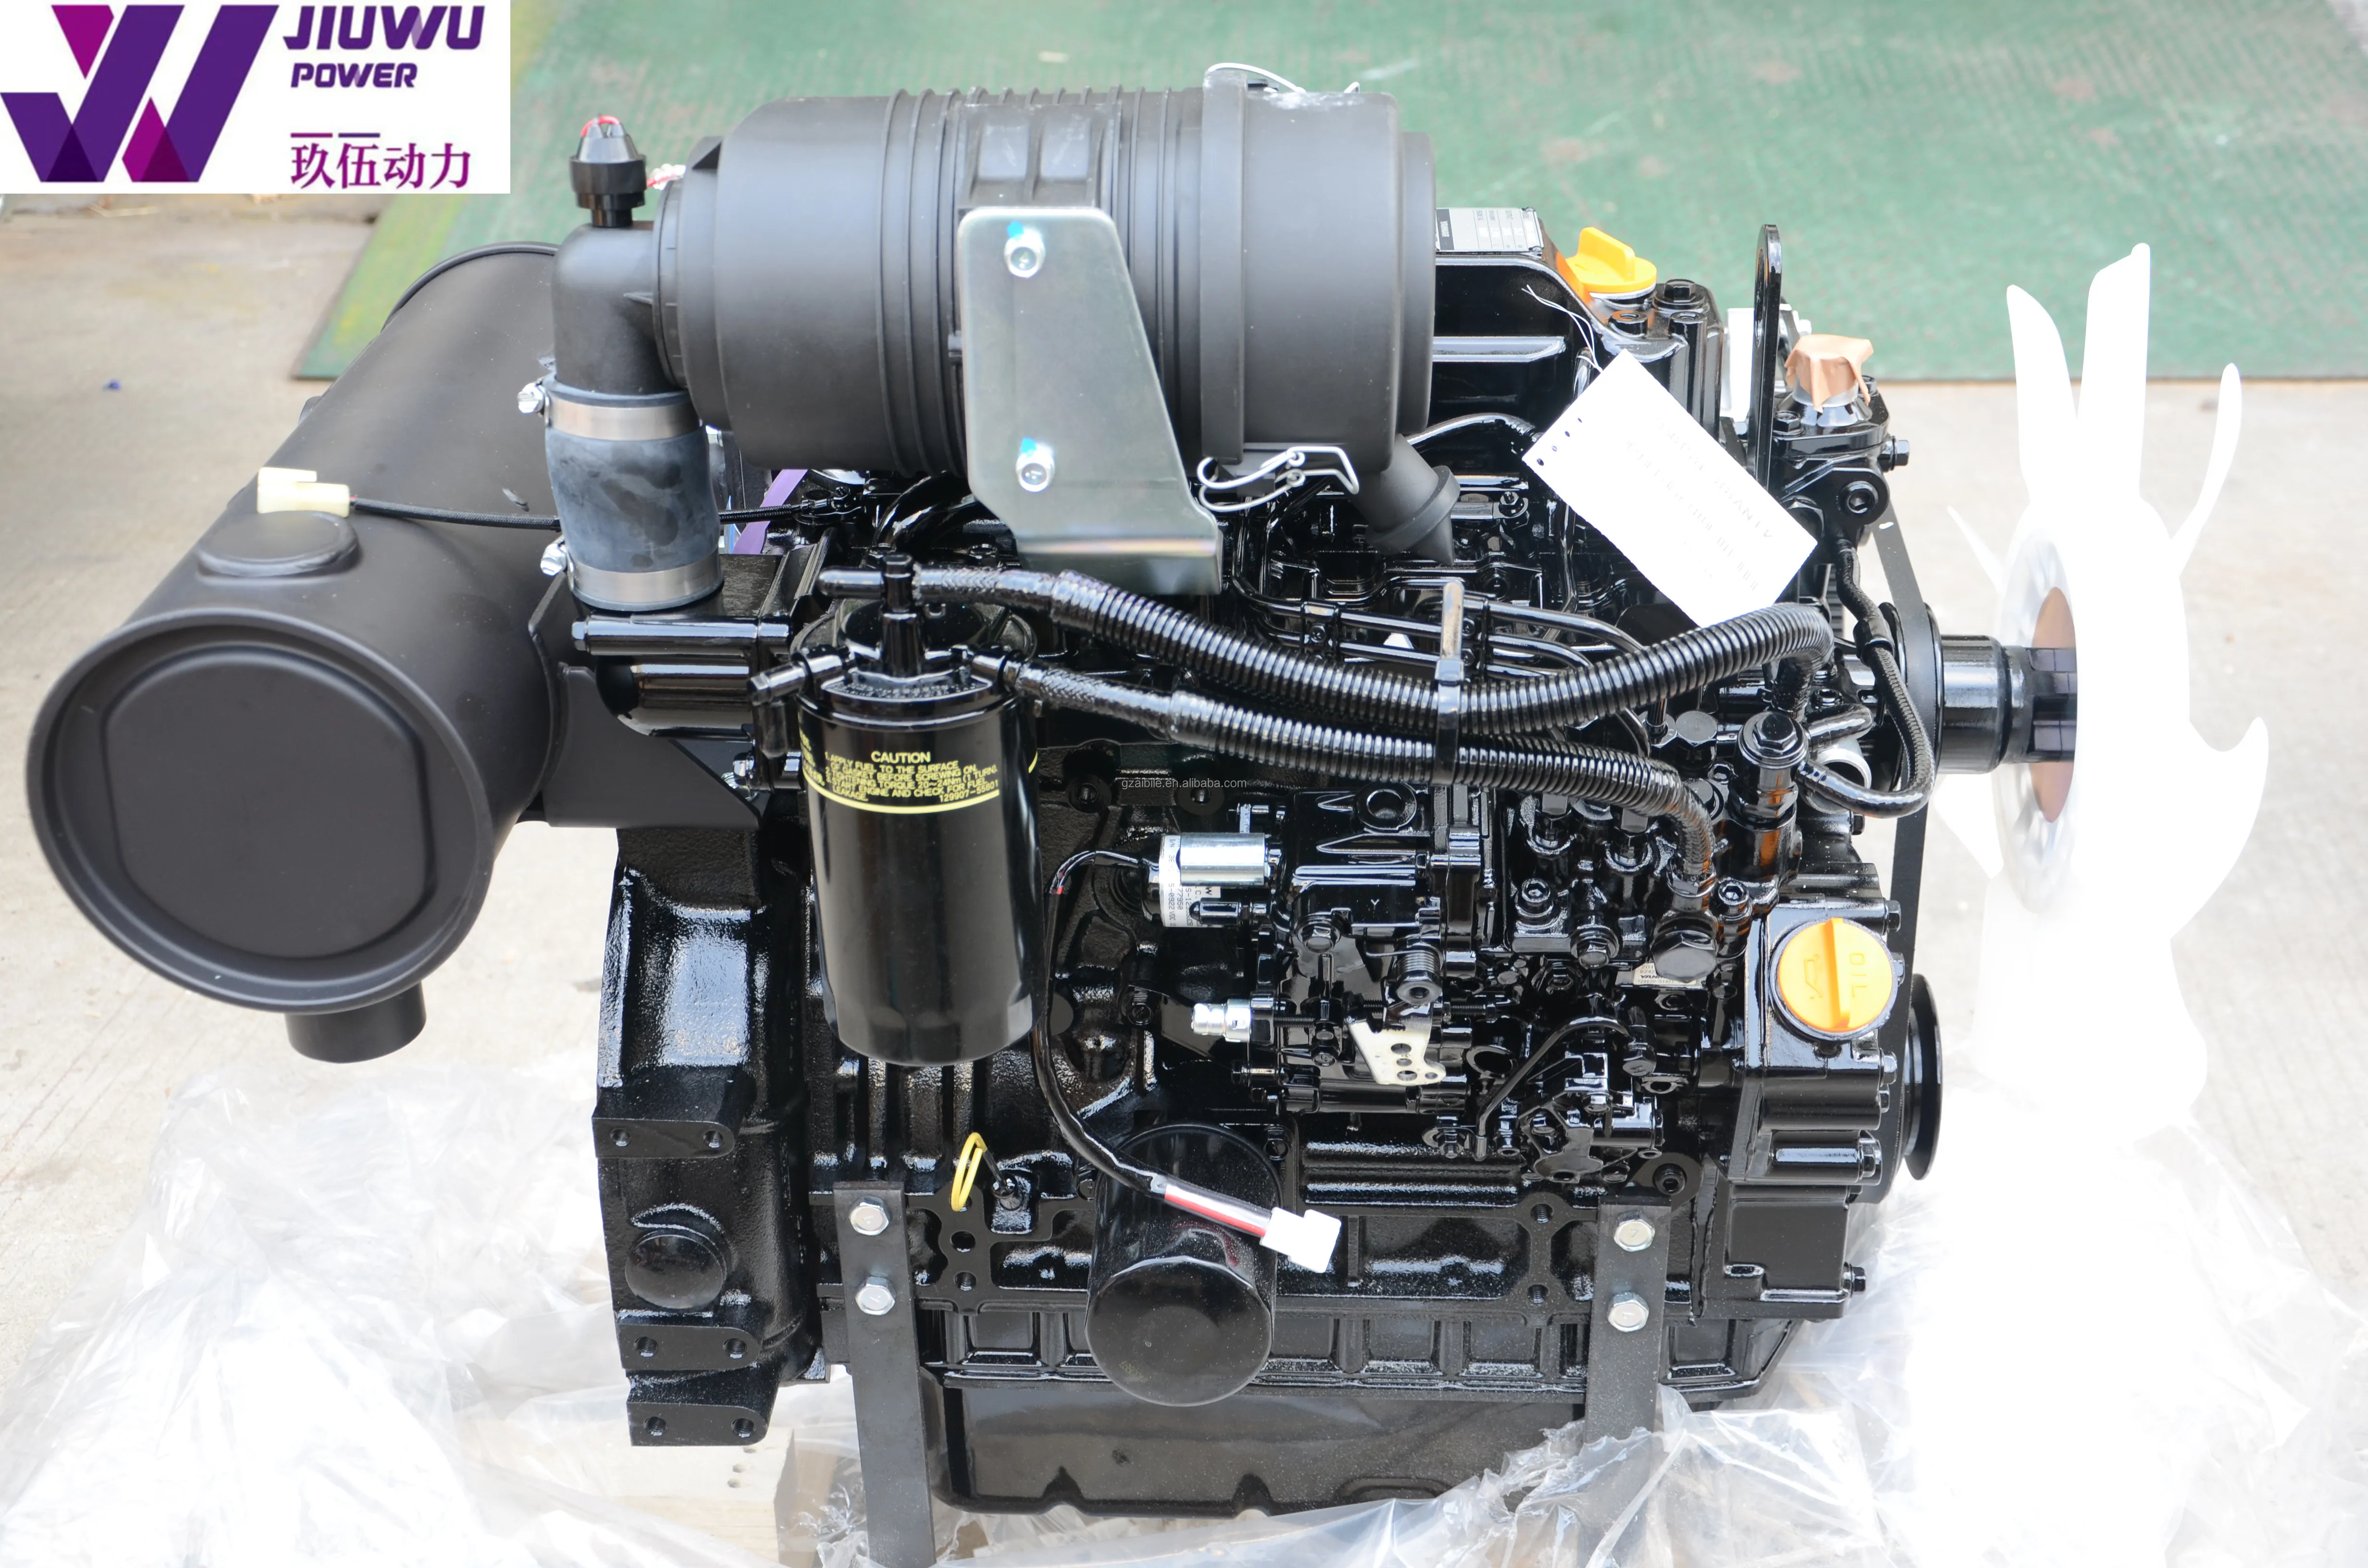 日本制造的 yanmar 原装发动机总成由 jiuwu 电源供应商制造